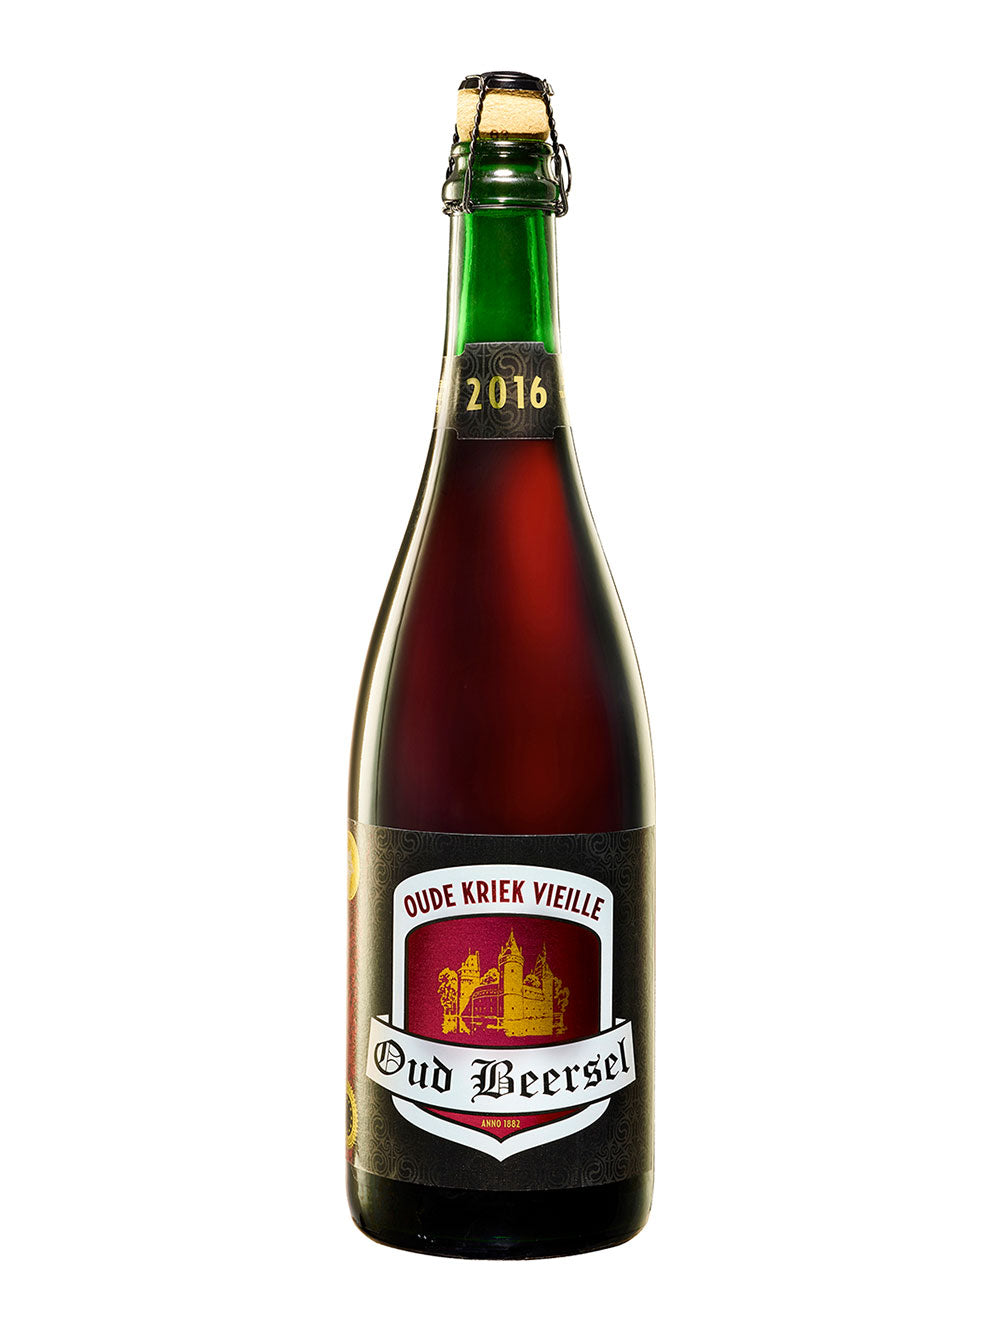 Oud Beersel- Oude Kriek Vieille 6% ABV 750ml Bottle